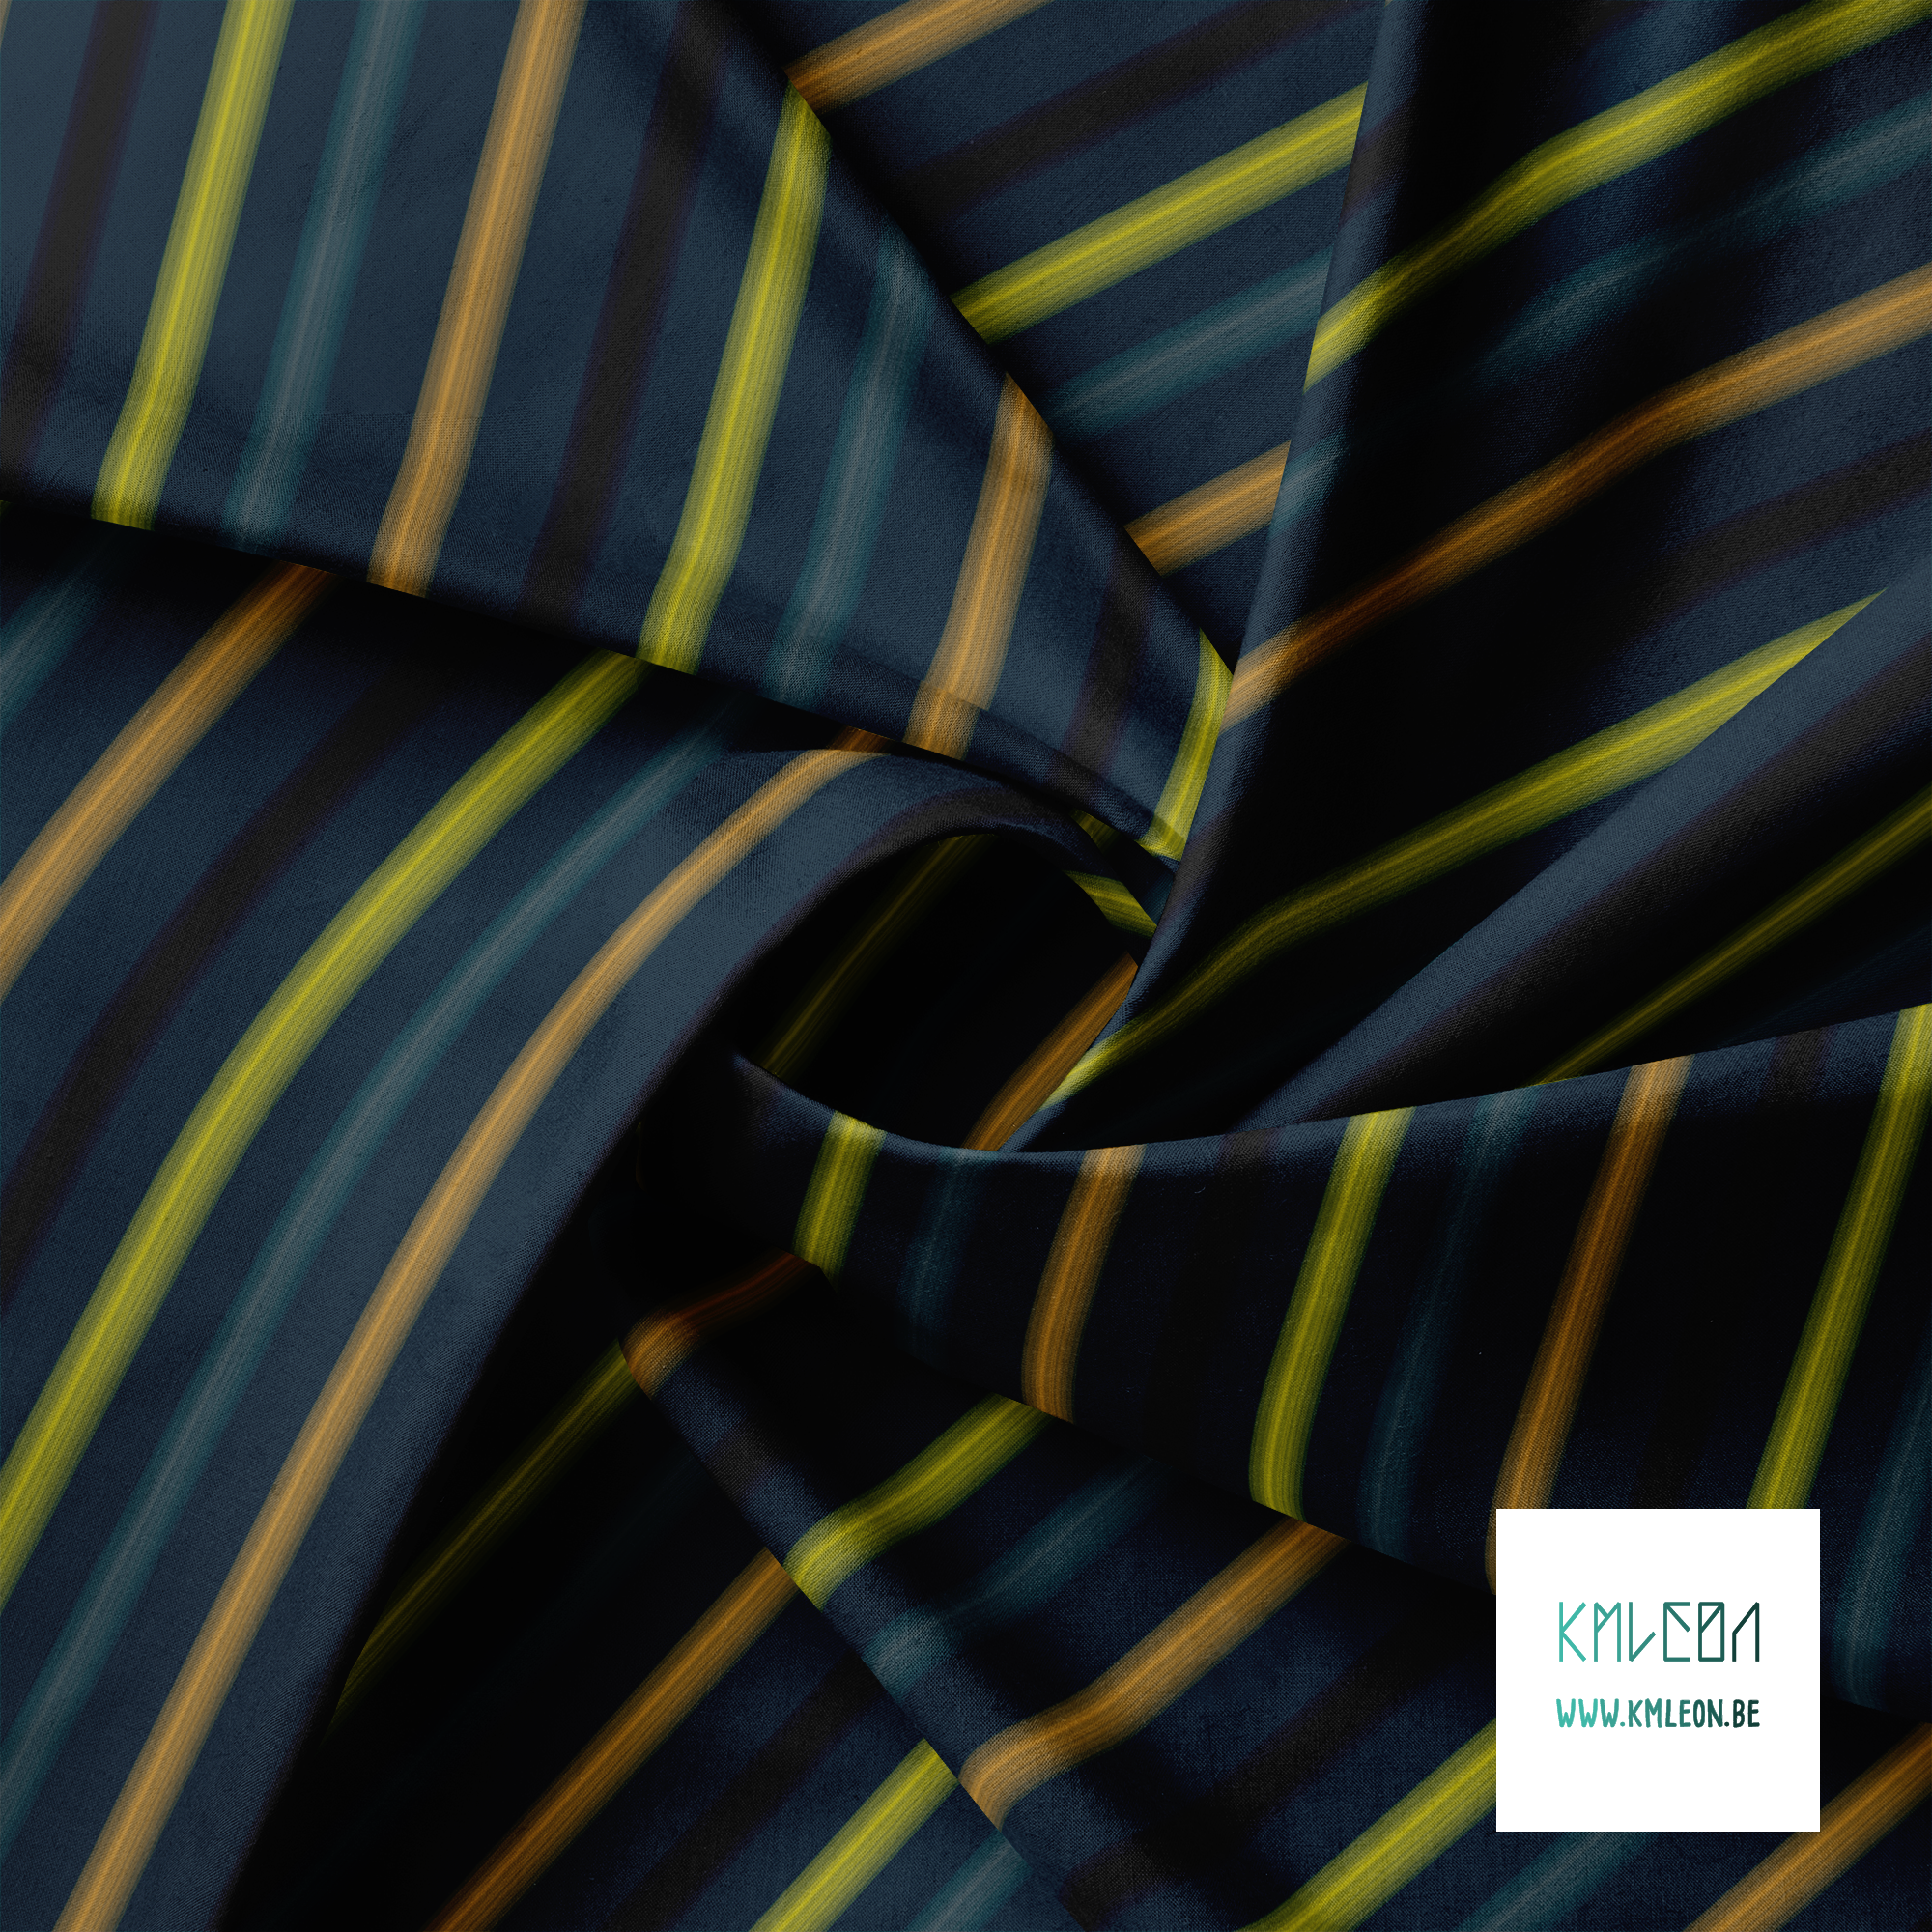 Zachte horizontale strepen in zwart, geel, grijs en oranje stof